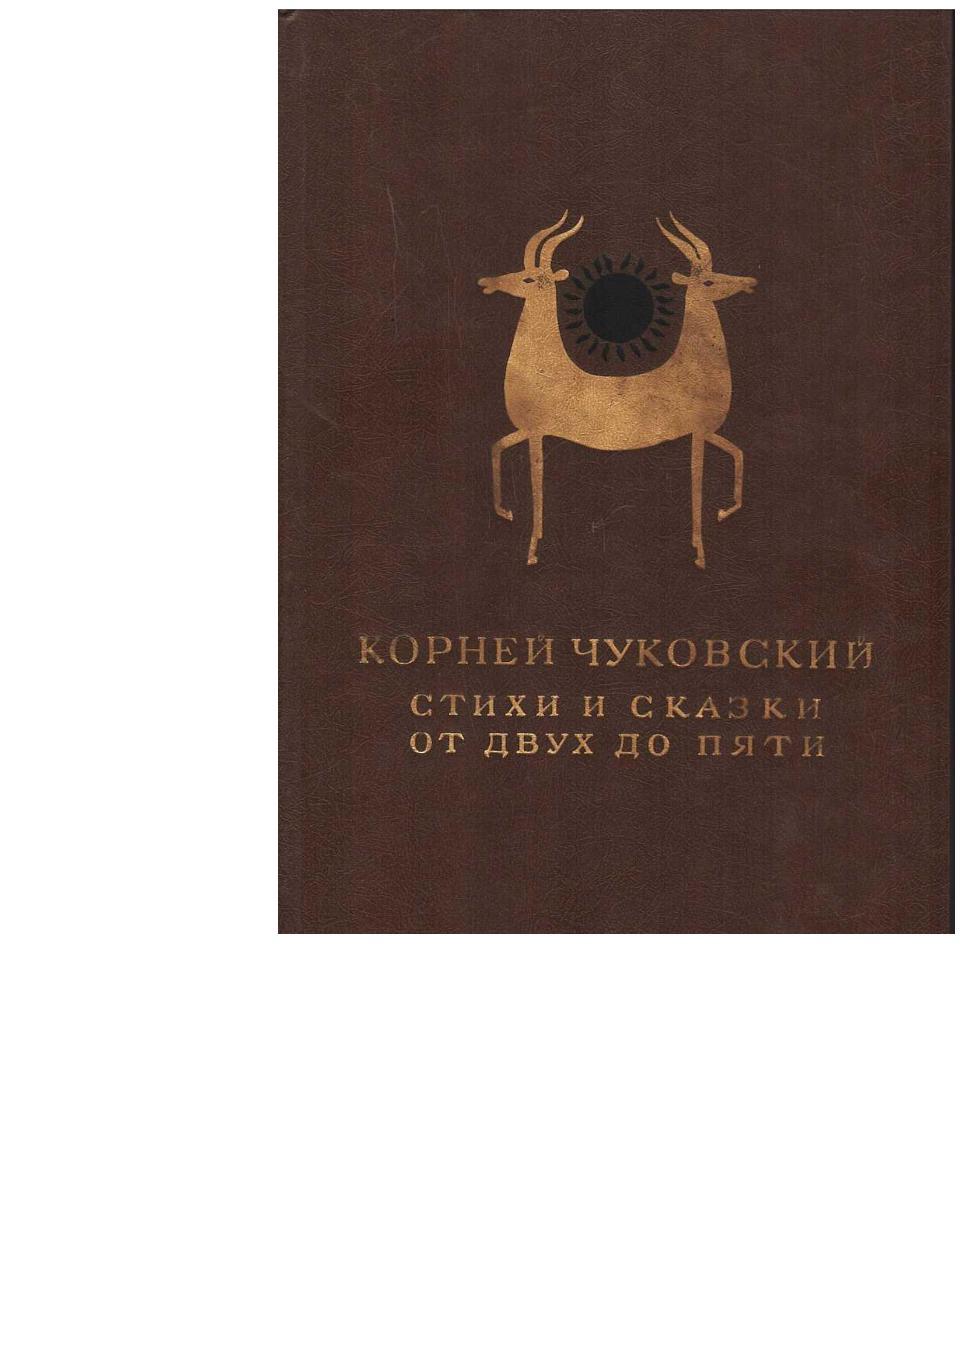 Чуковский К. Стихи и сказки. От двух до пяти. – М. , 1986.